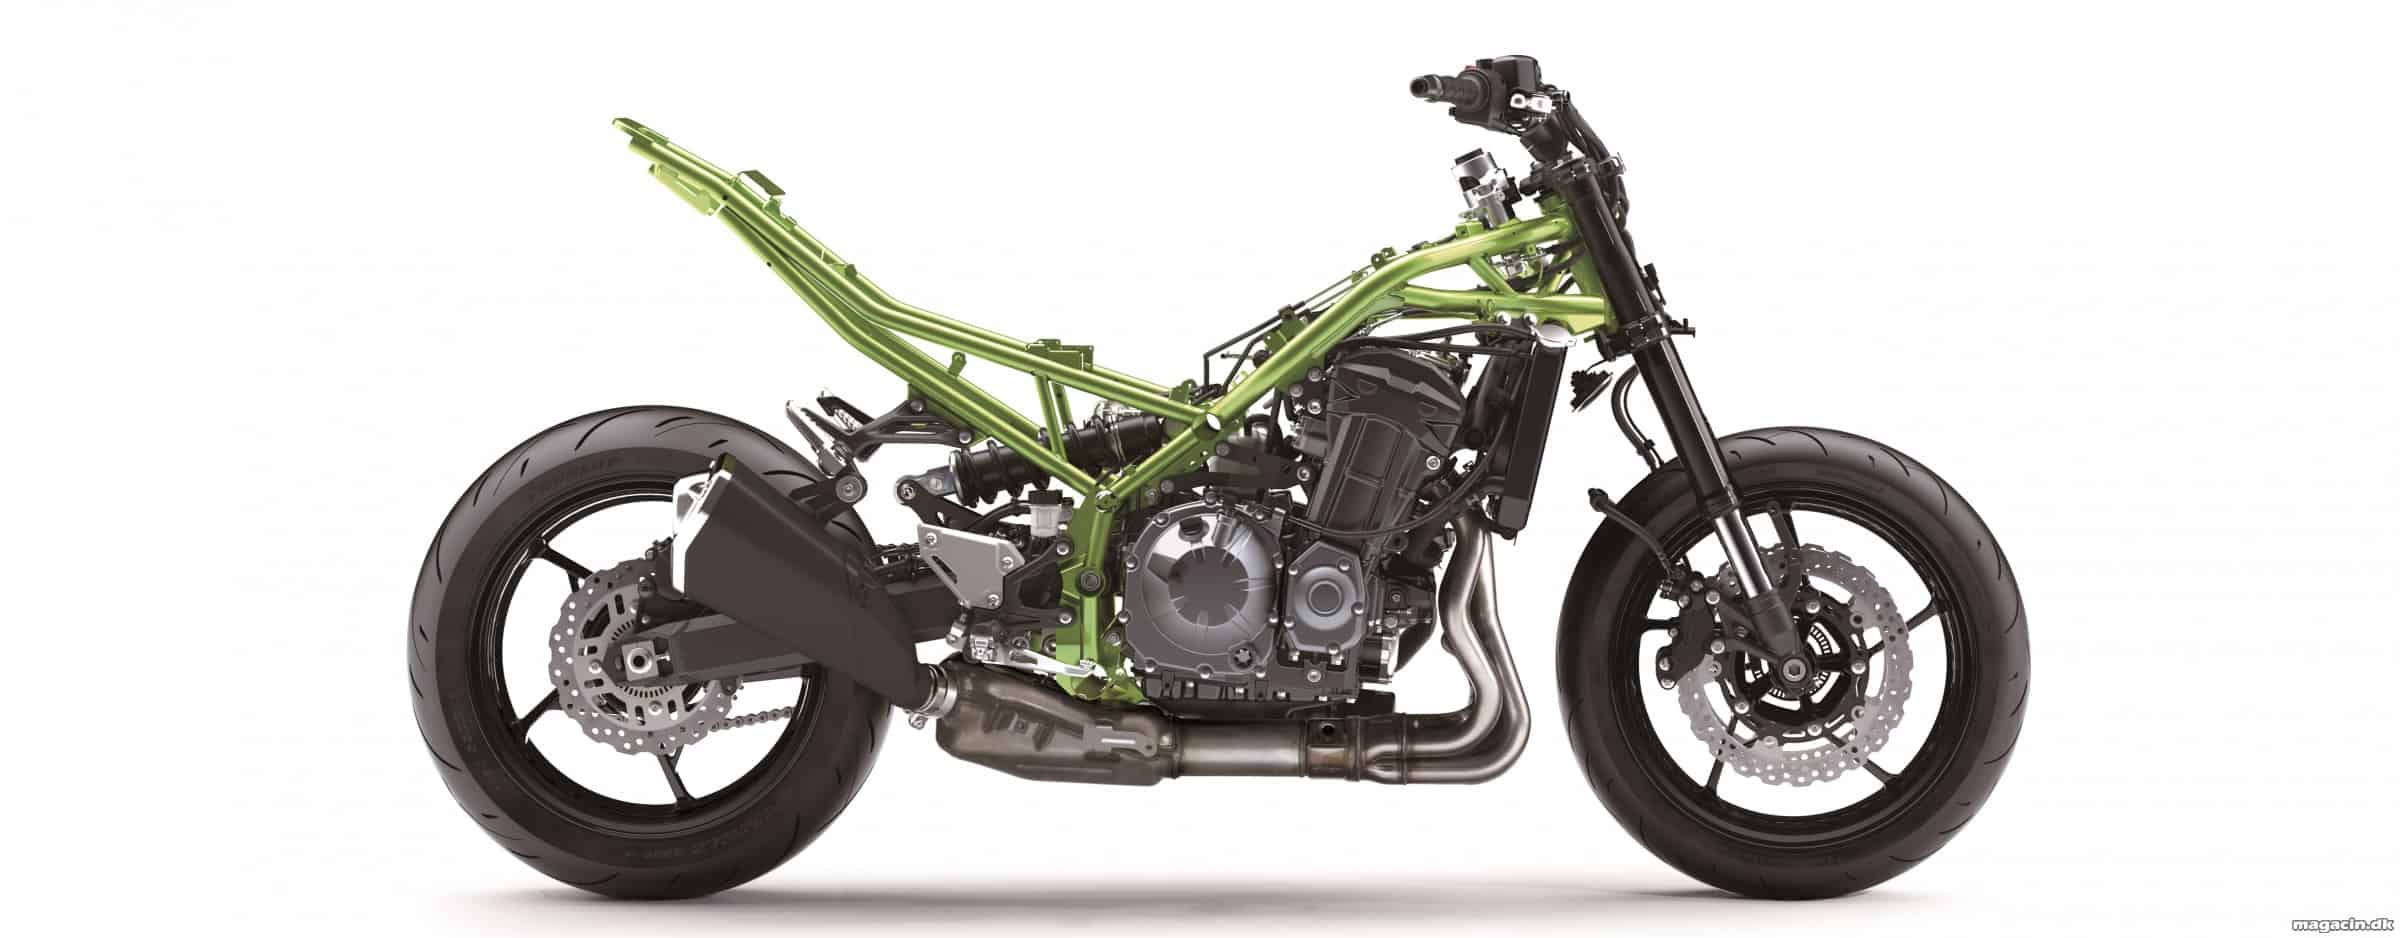 Z 900 ikonisk Kawasaki model